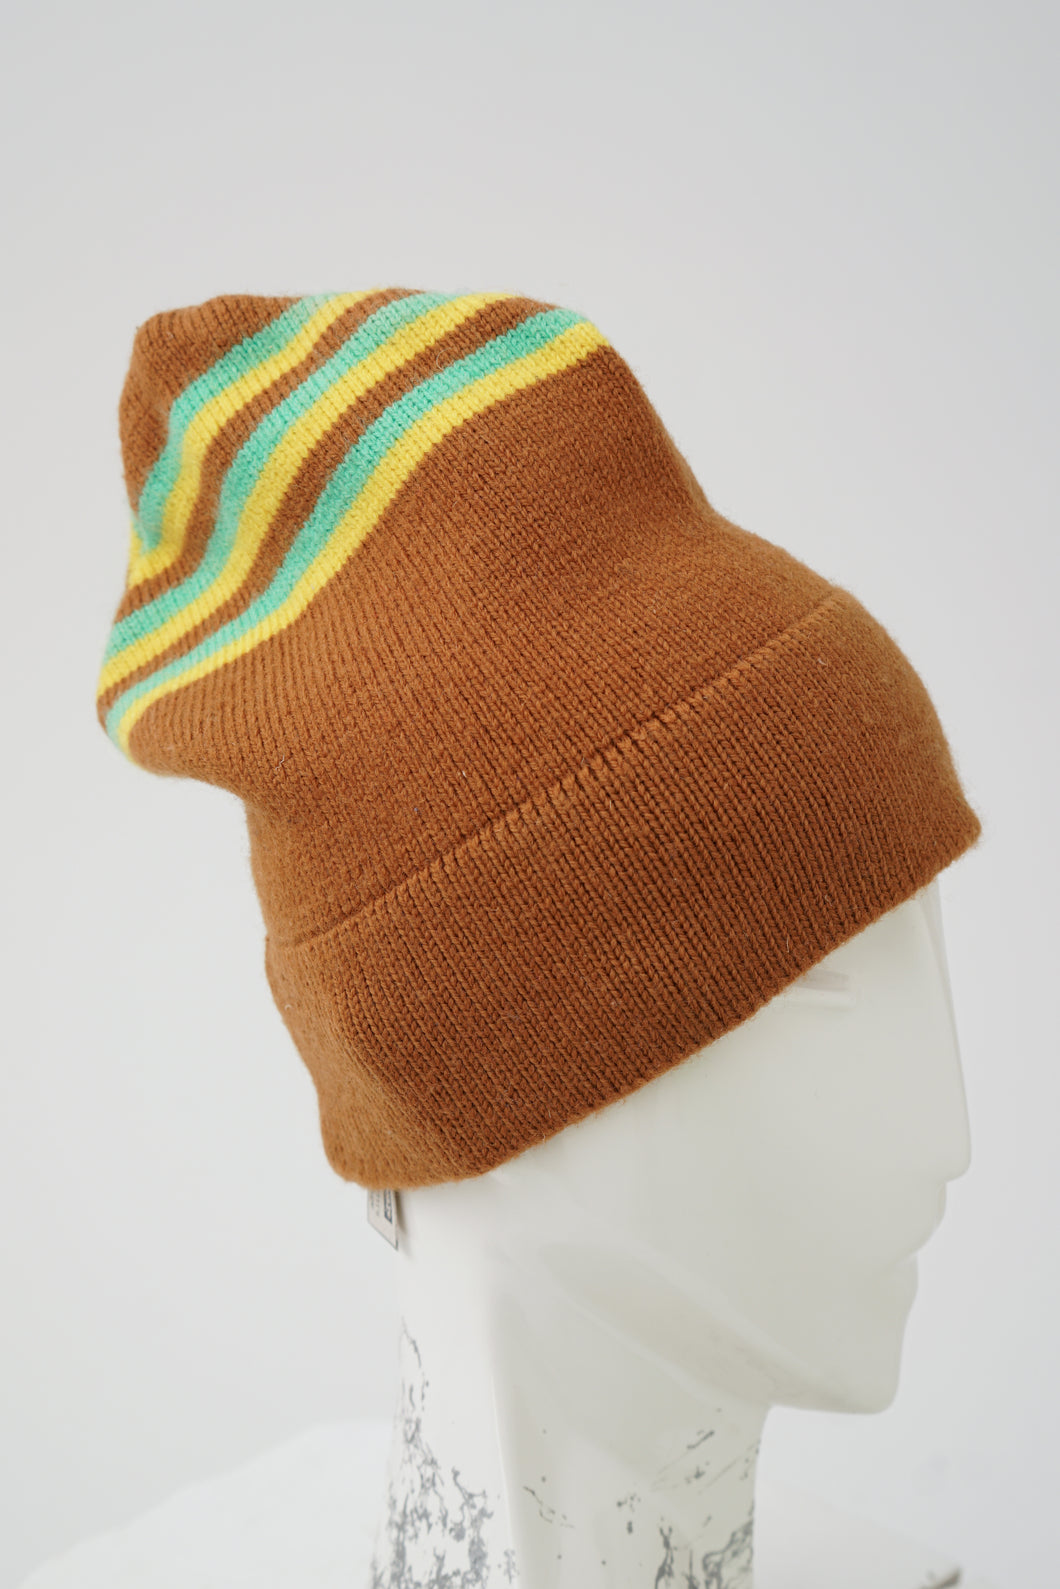 Tuque vintage en pure laine vierge brune avec lignes jaunes et turquoises